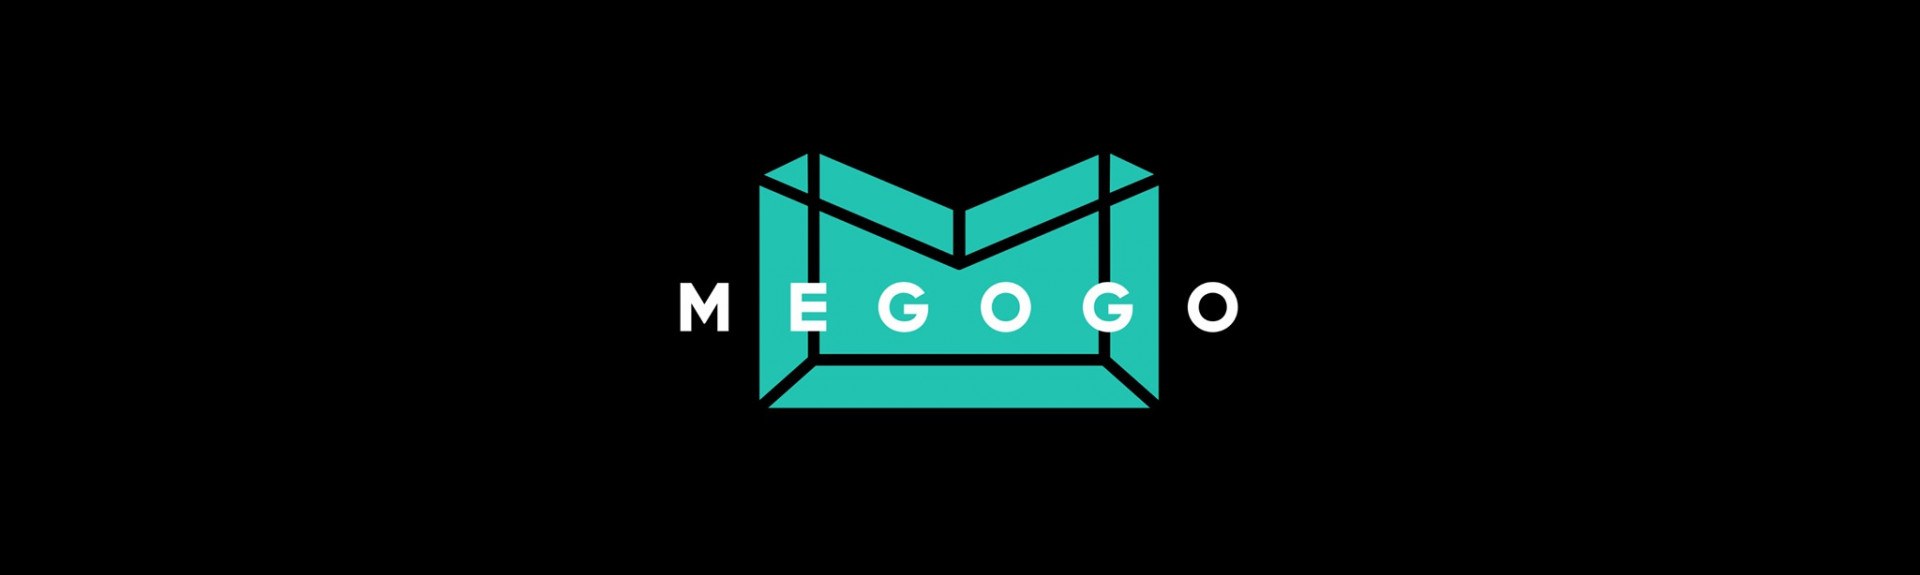 MEGOGO VR